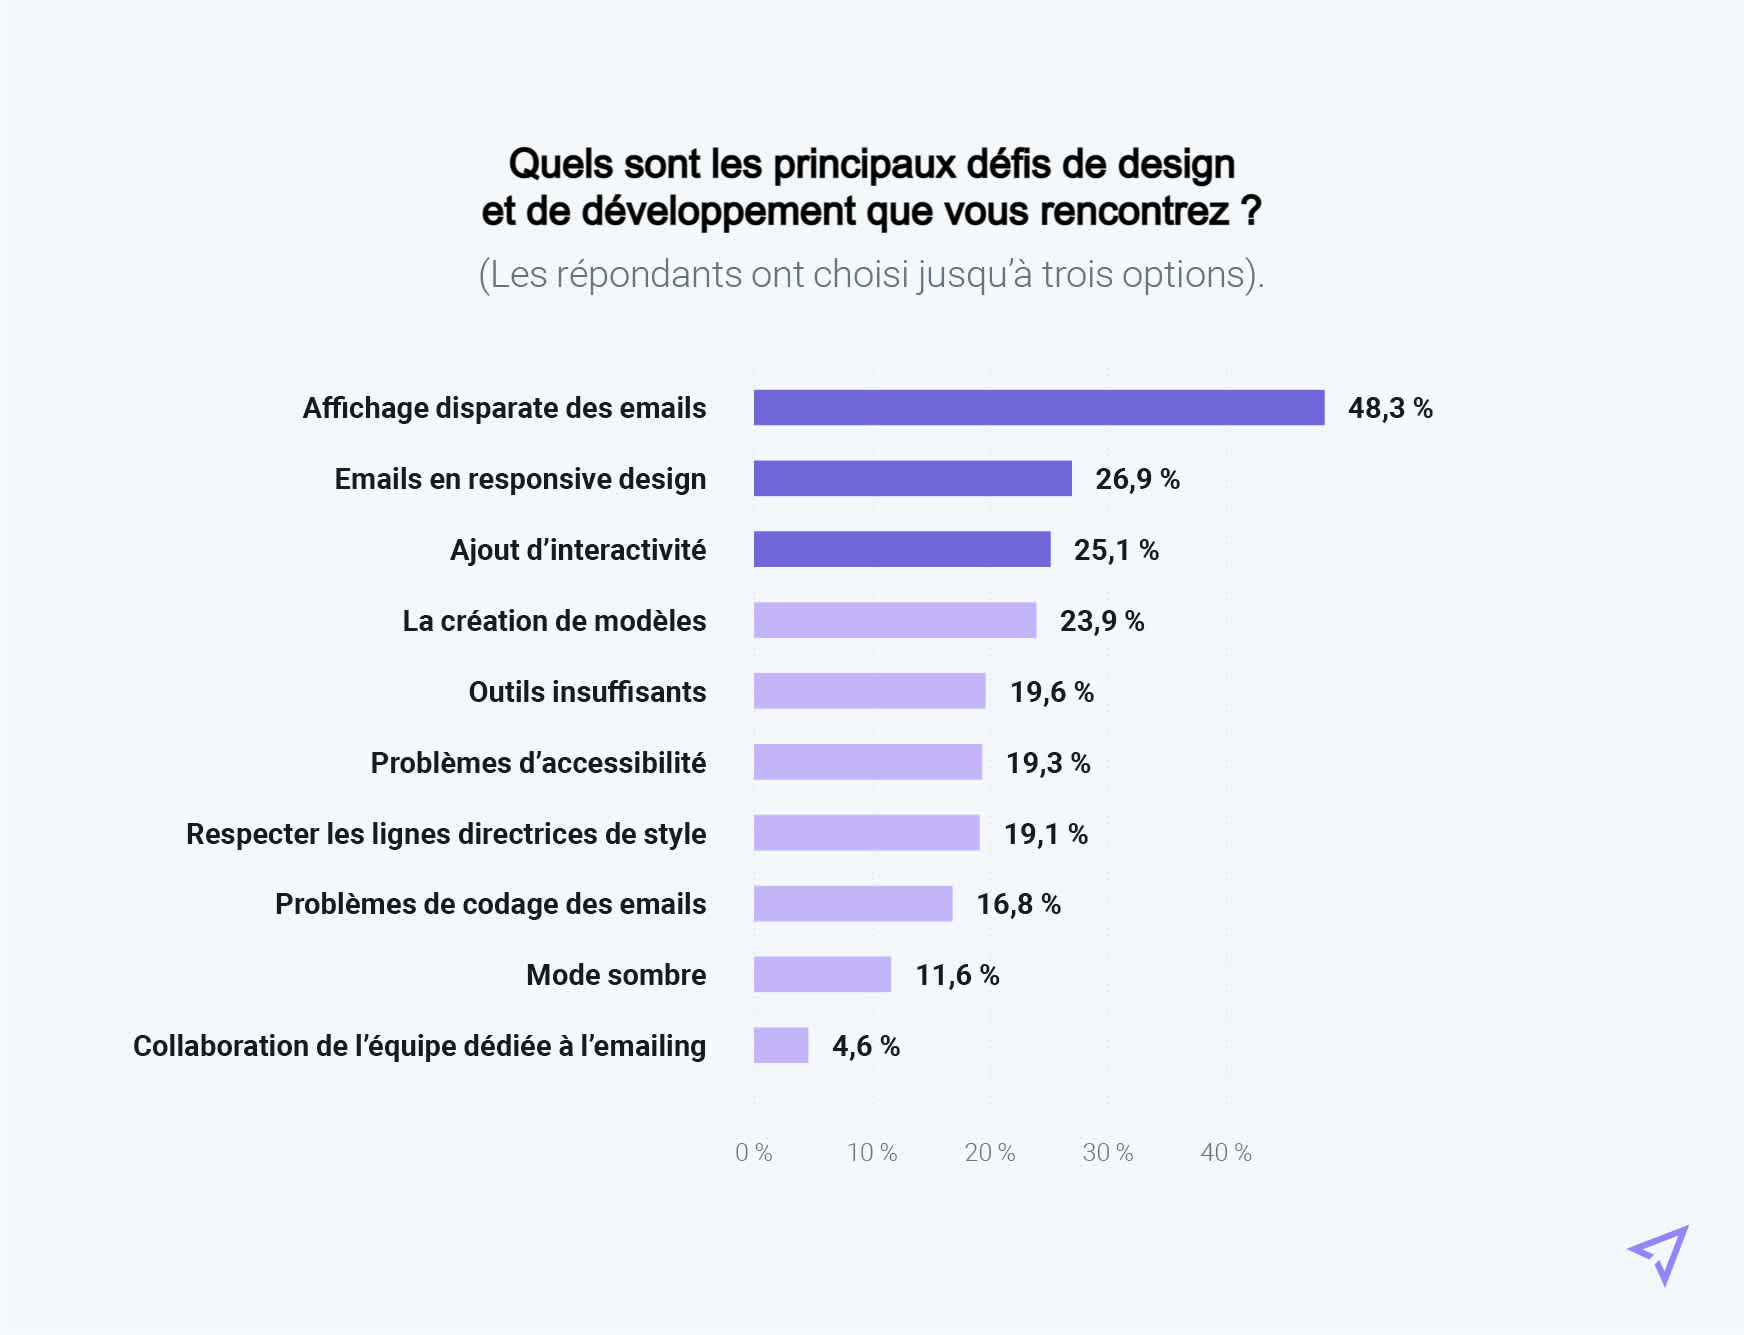 Graphique représentant les principaux problèmes de design auxquels sont confrontés les expéditeurs français